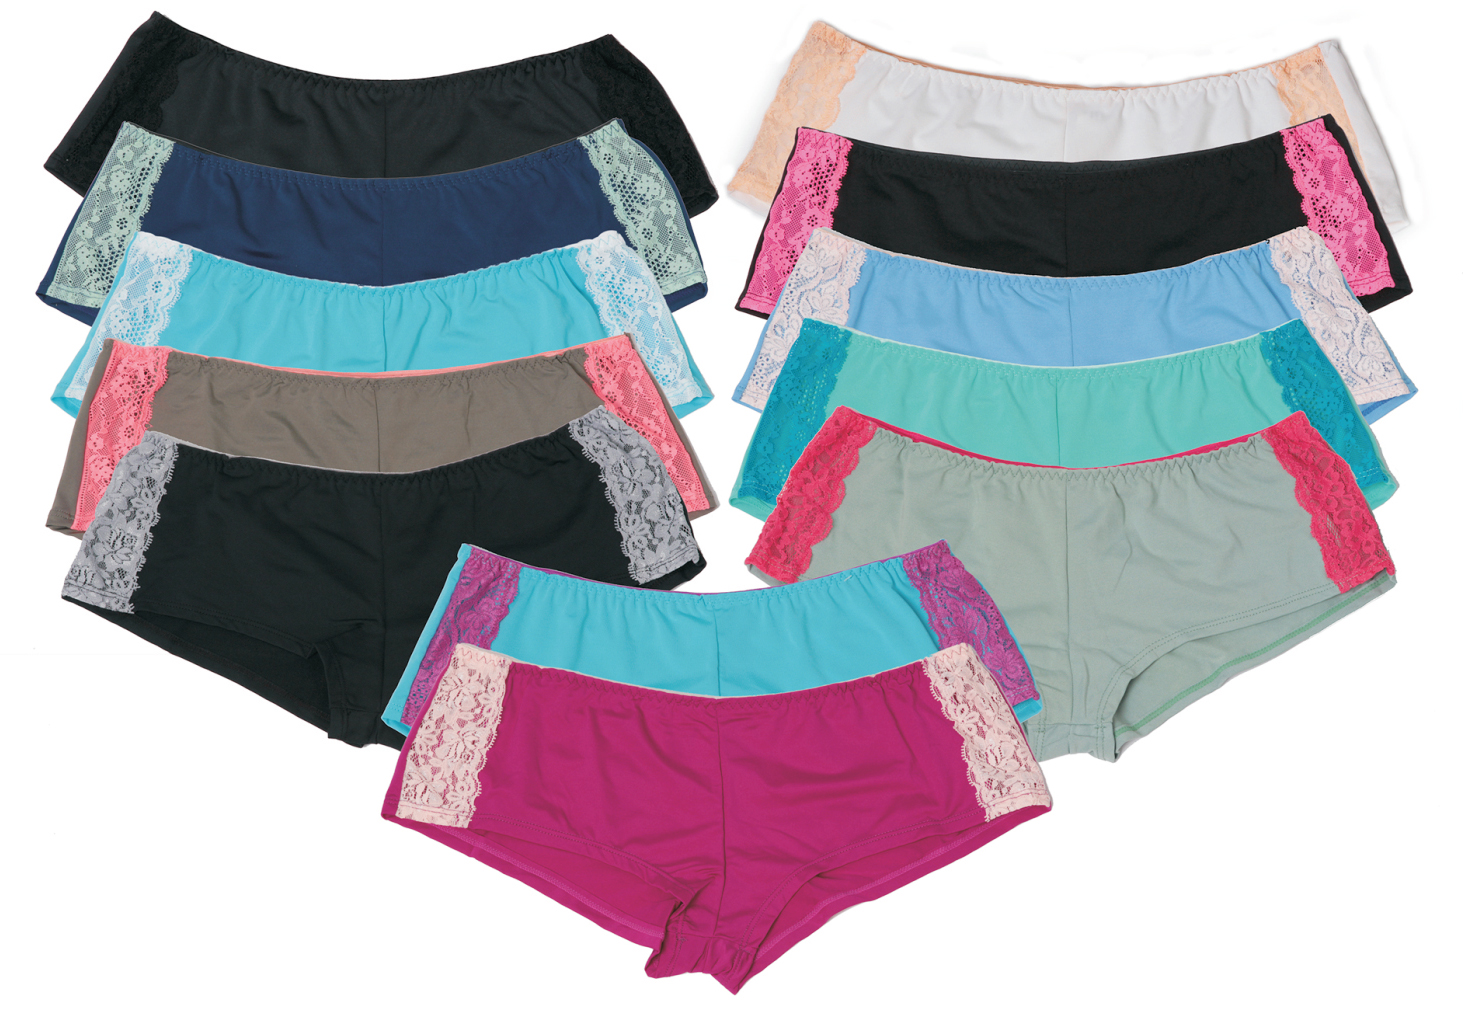 Women's Nylon/Spandex Boy SHORT Panties - Solid Colors w/ Lace - Sizes 5-7